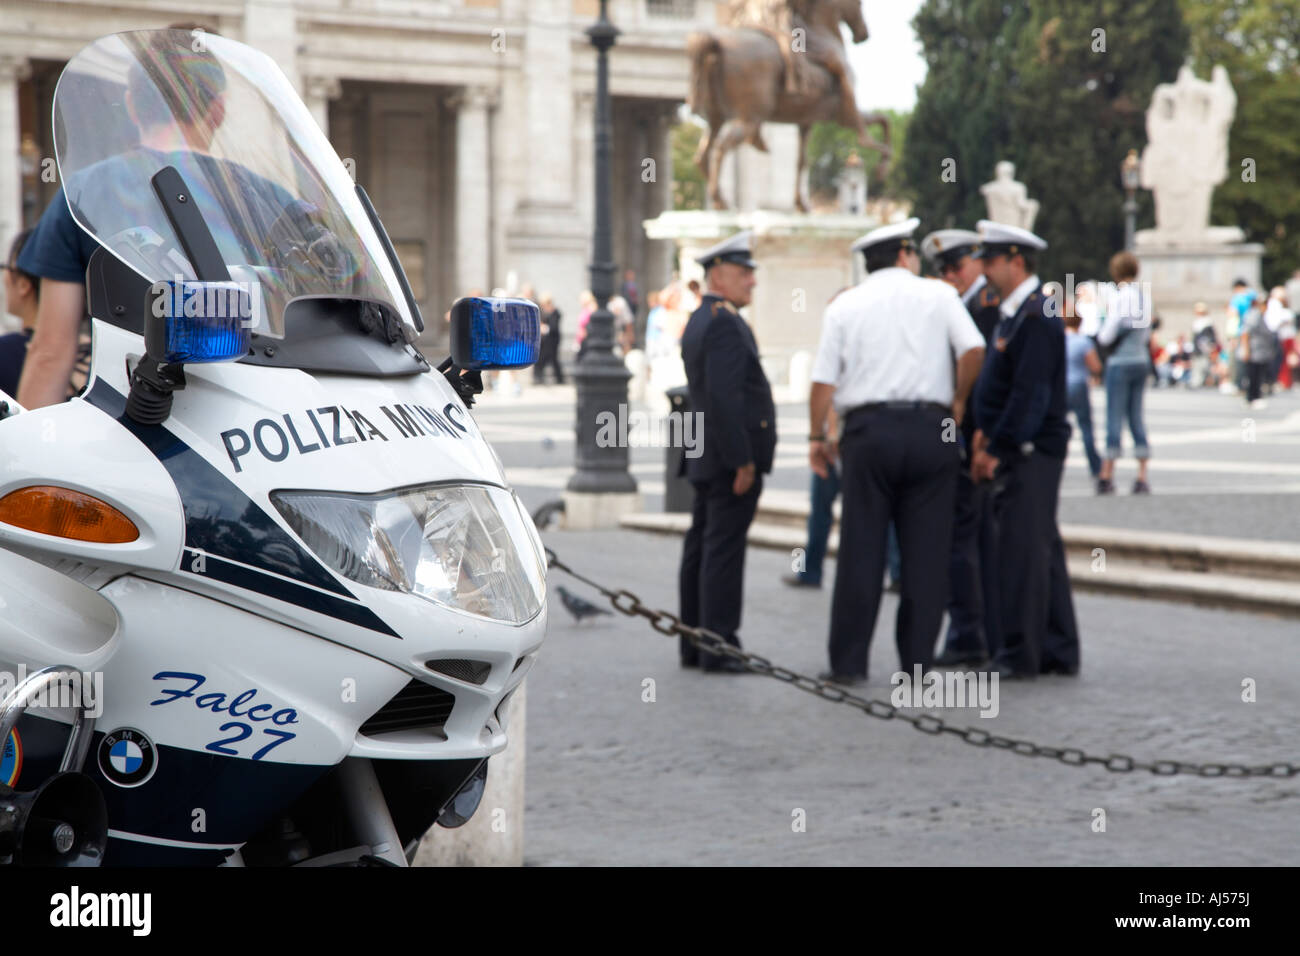 Stand de la police municipale de parler dans l'arrière-plan derrière moto de police dans le Campidoglio Rome Lazio Italie Banque D'Images